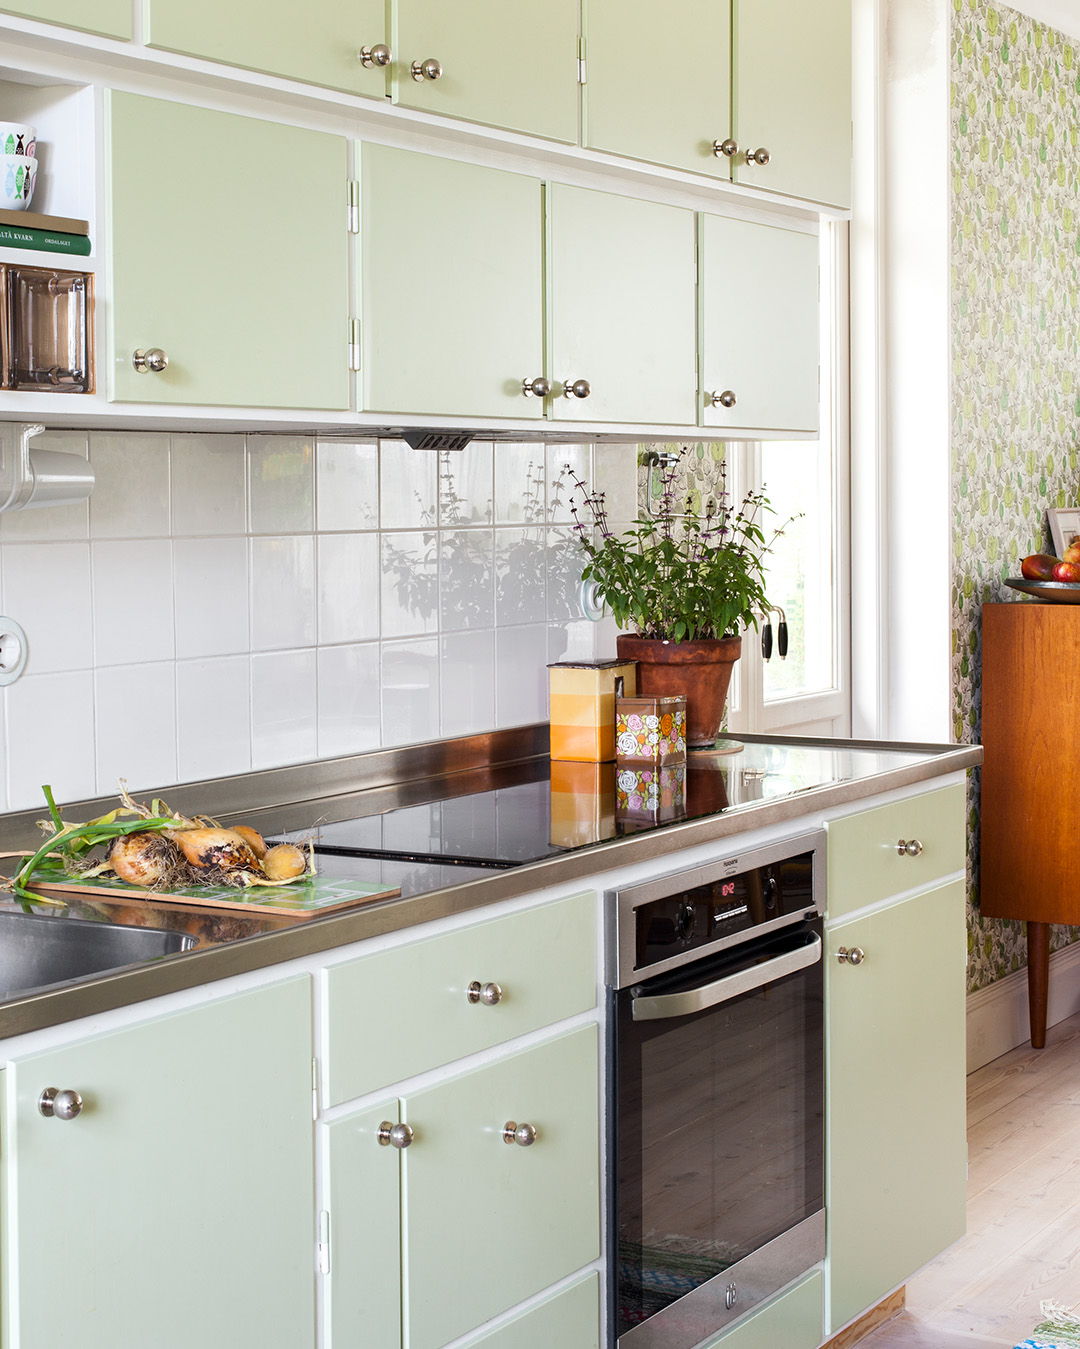 Måttbyggt kök målat i ljusgrön kulör med knopp Ribershus i förnicklad mässing.